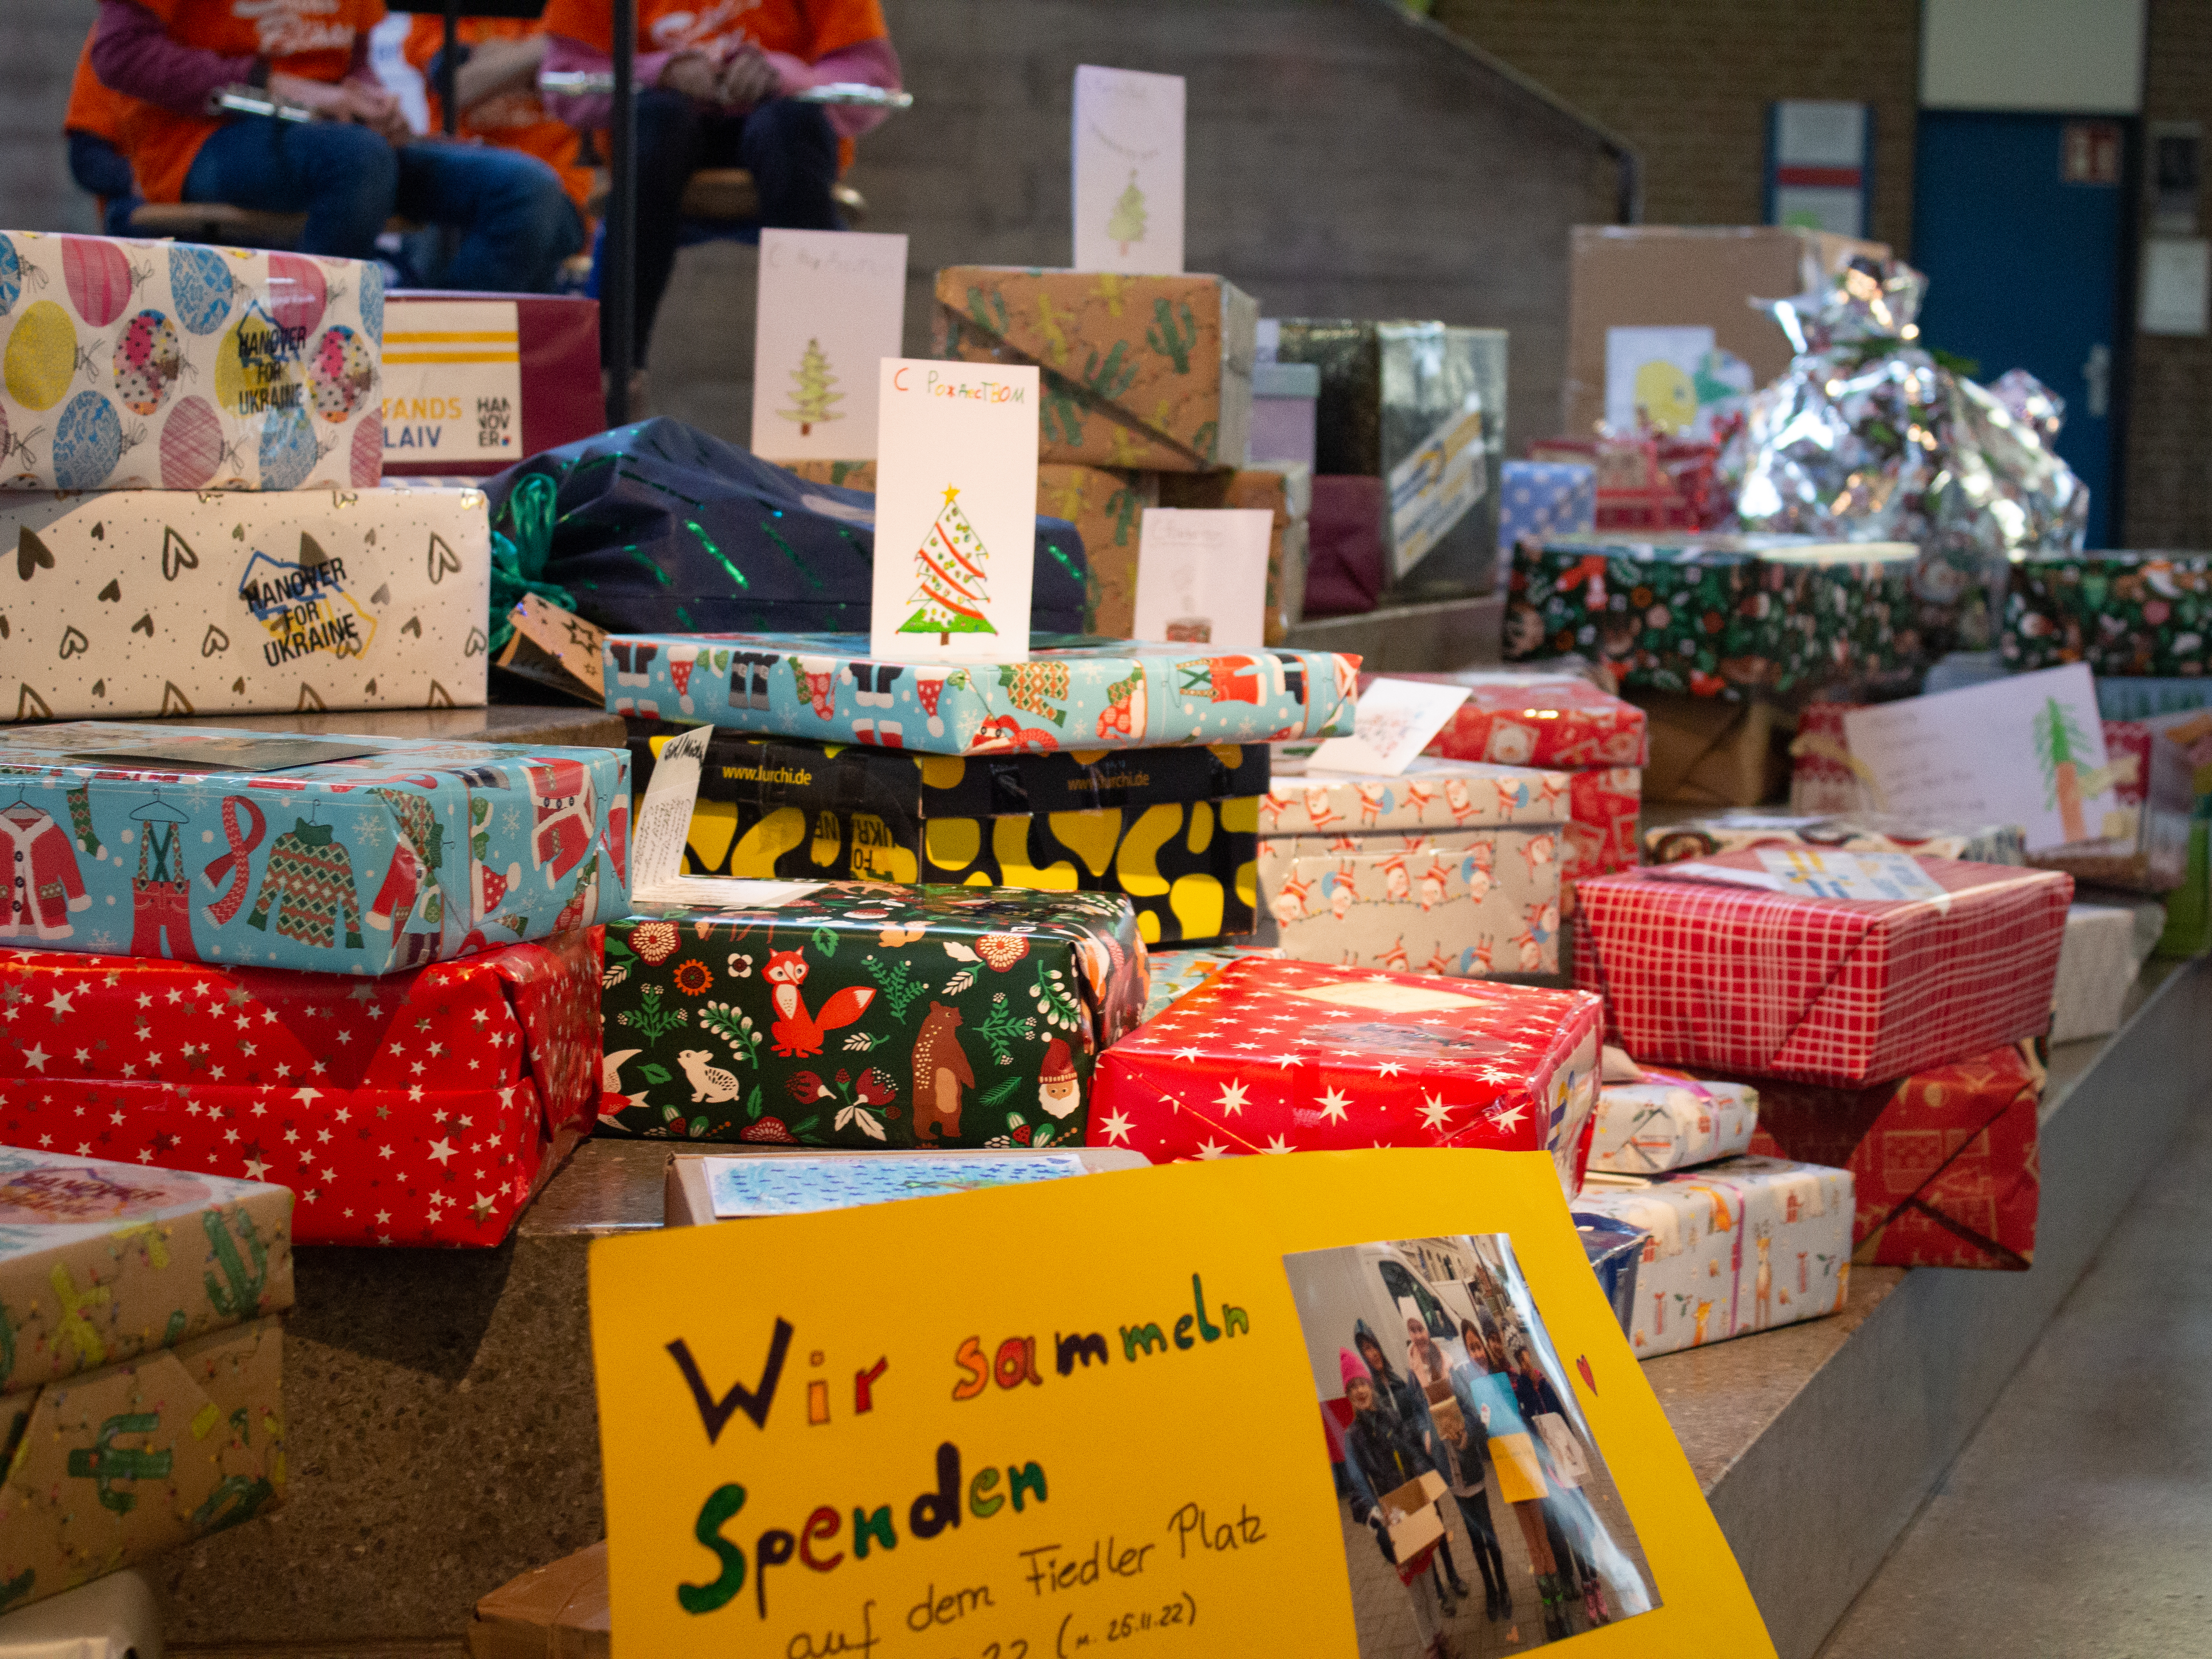 Bunt eingepackte Geschenke und im Vordergrund ein gelbes Schild mit der Aufschrift "Wir sammeln Spenden".